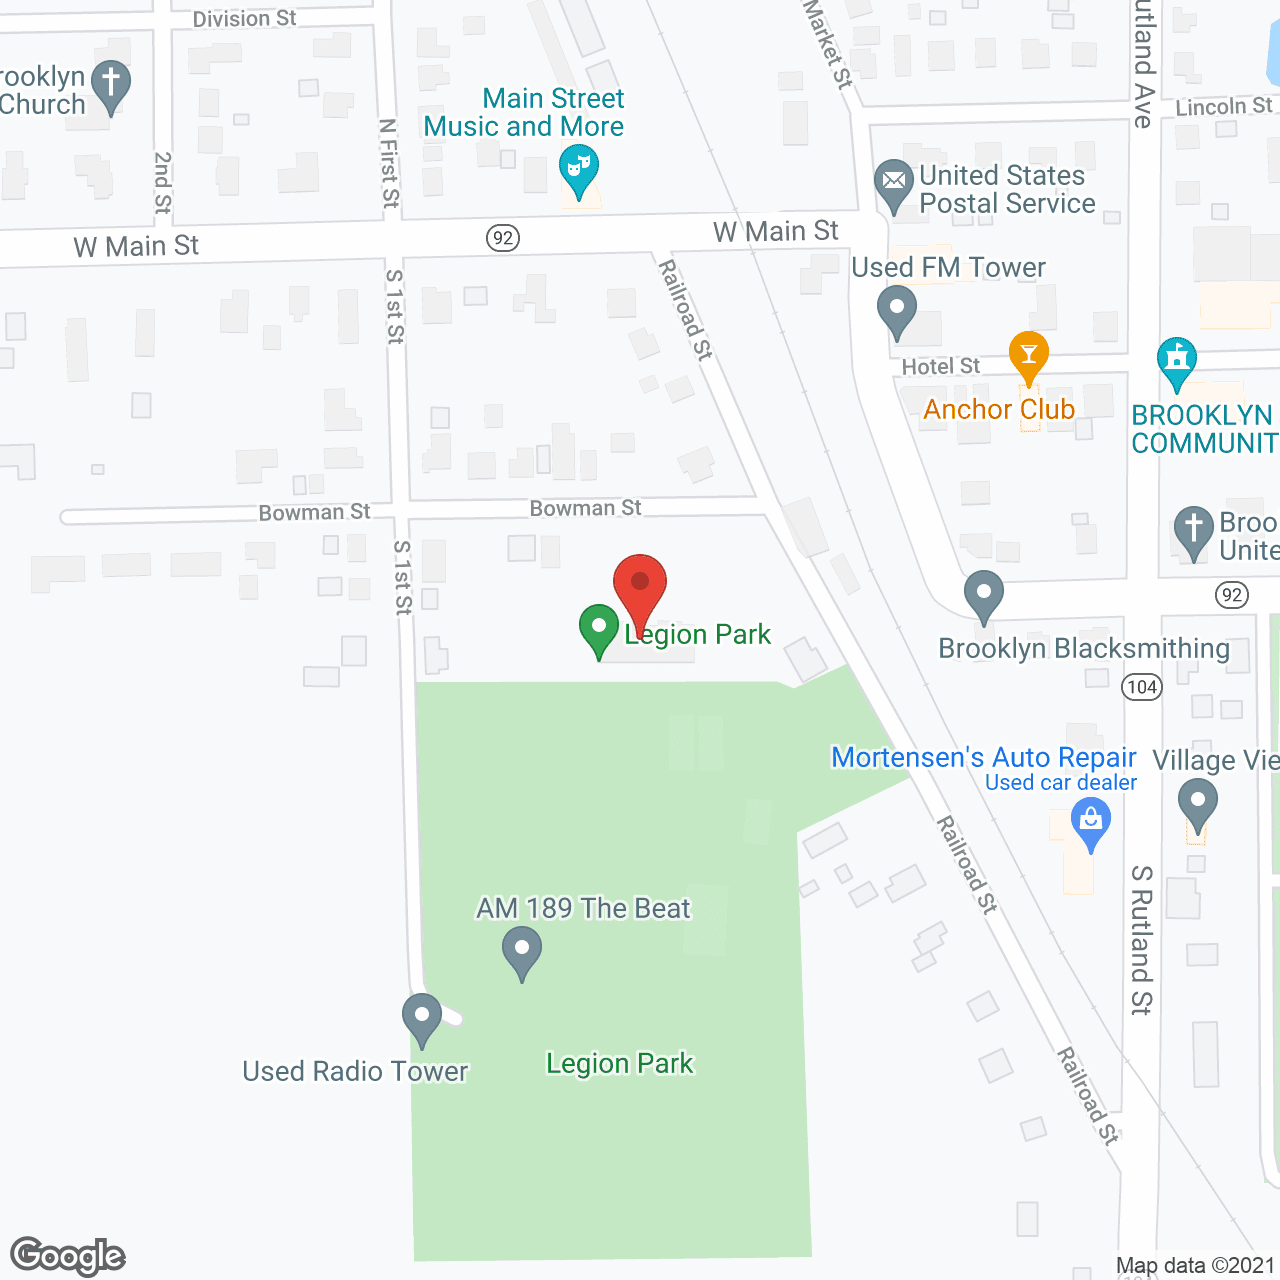 Genesis Housing in google map